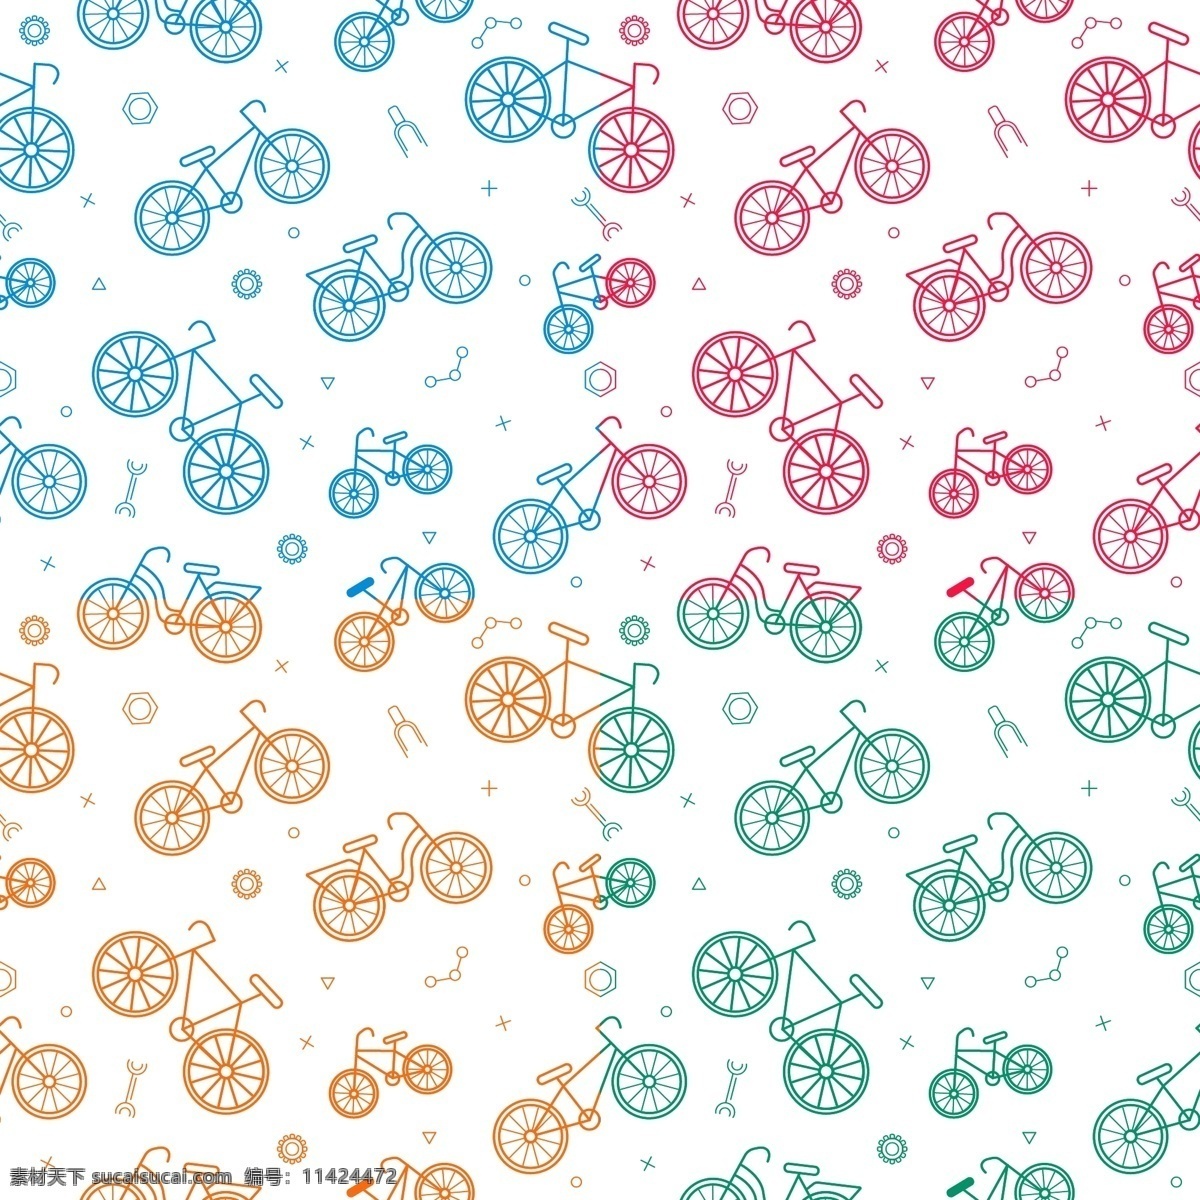 矢量自行车 自行车剪影 卡通自行车 手绘自行车 自行车背景 简洁自行车 线条自行车 交通工具 现代科技